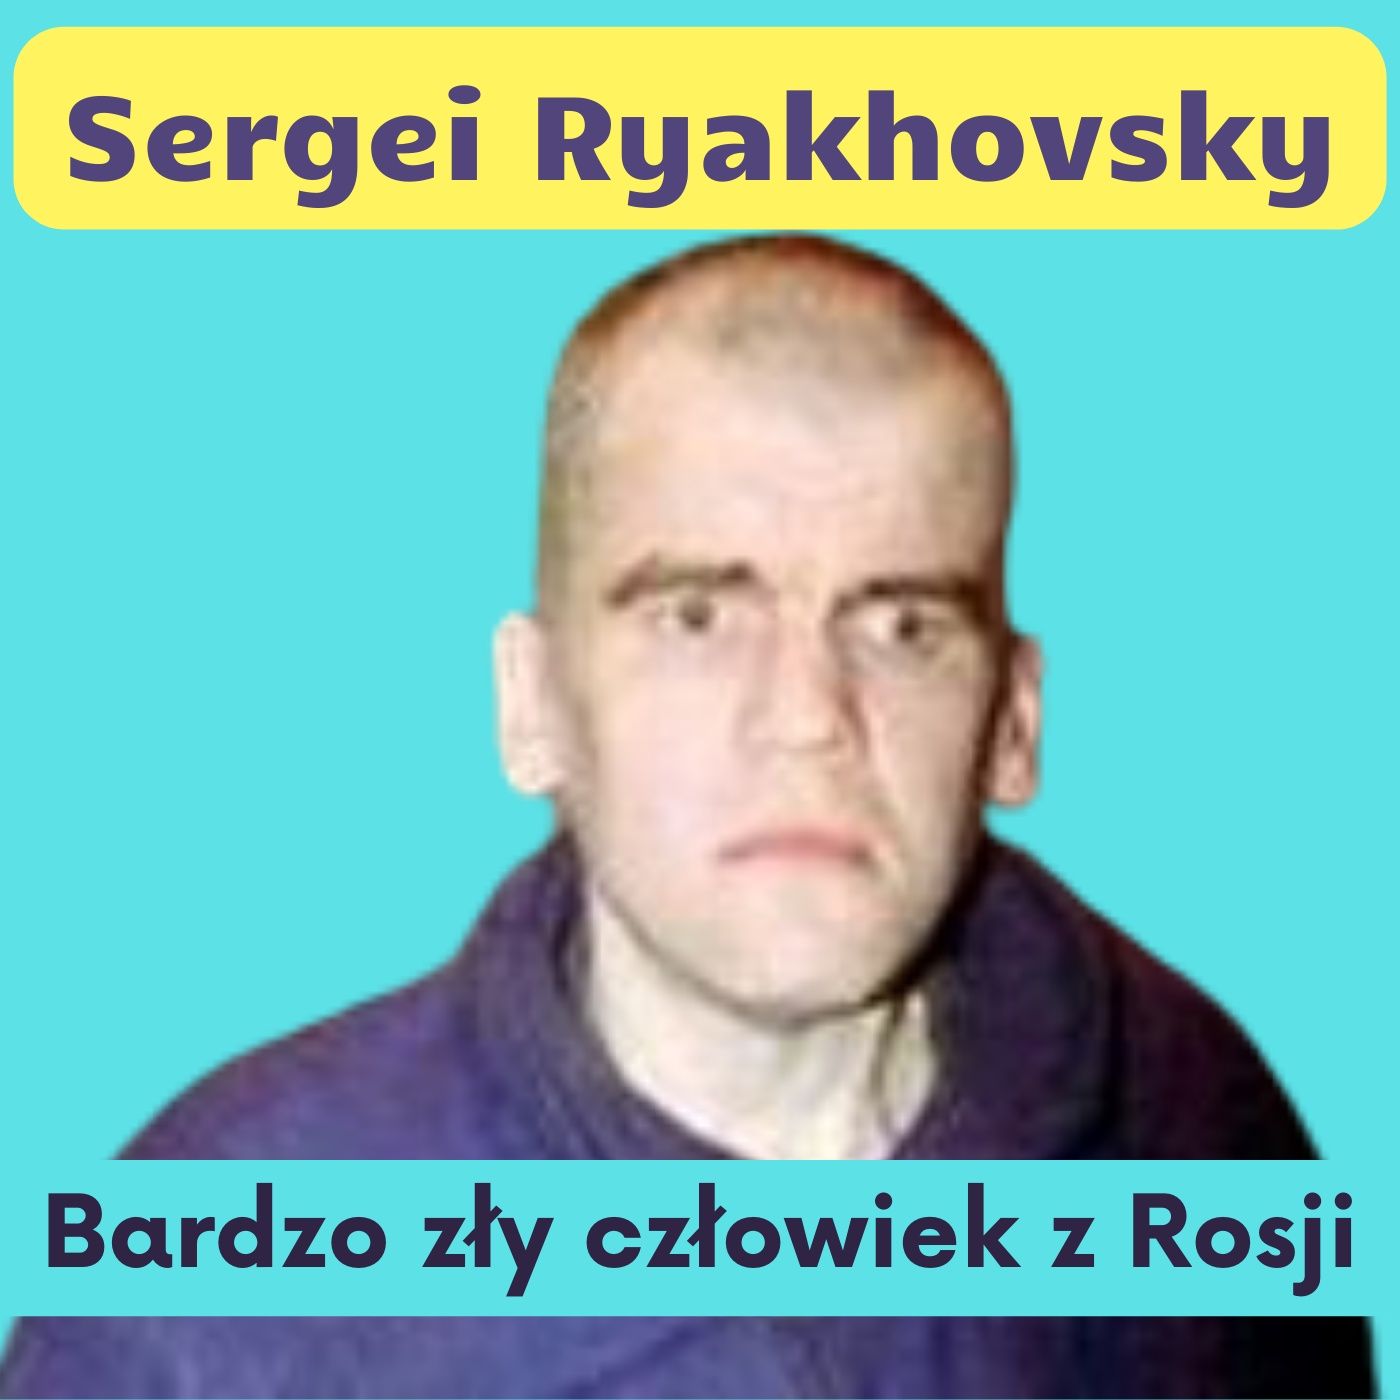 83. Sergei Ryakhovsky, morderca gejów i staruszek z Rosji